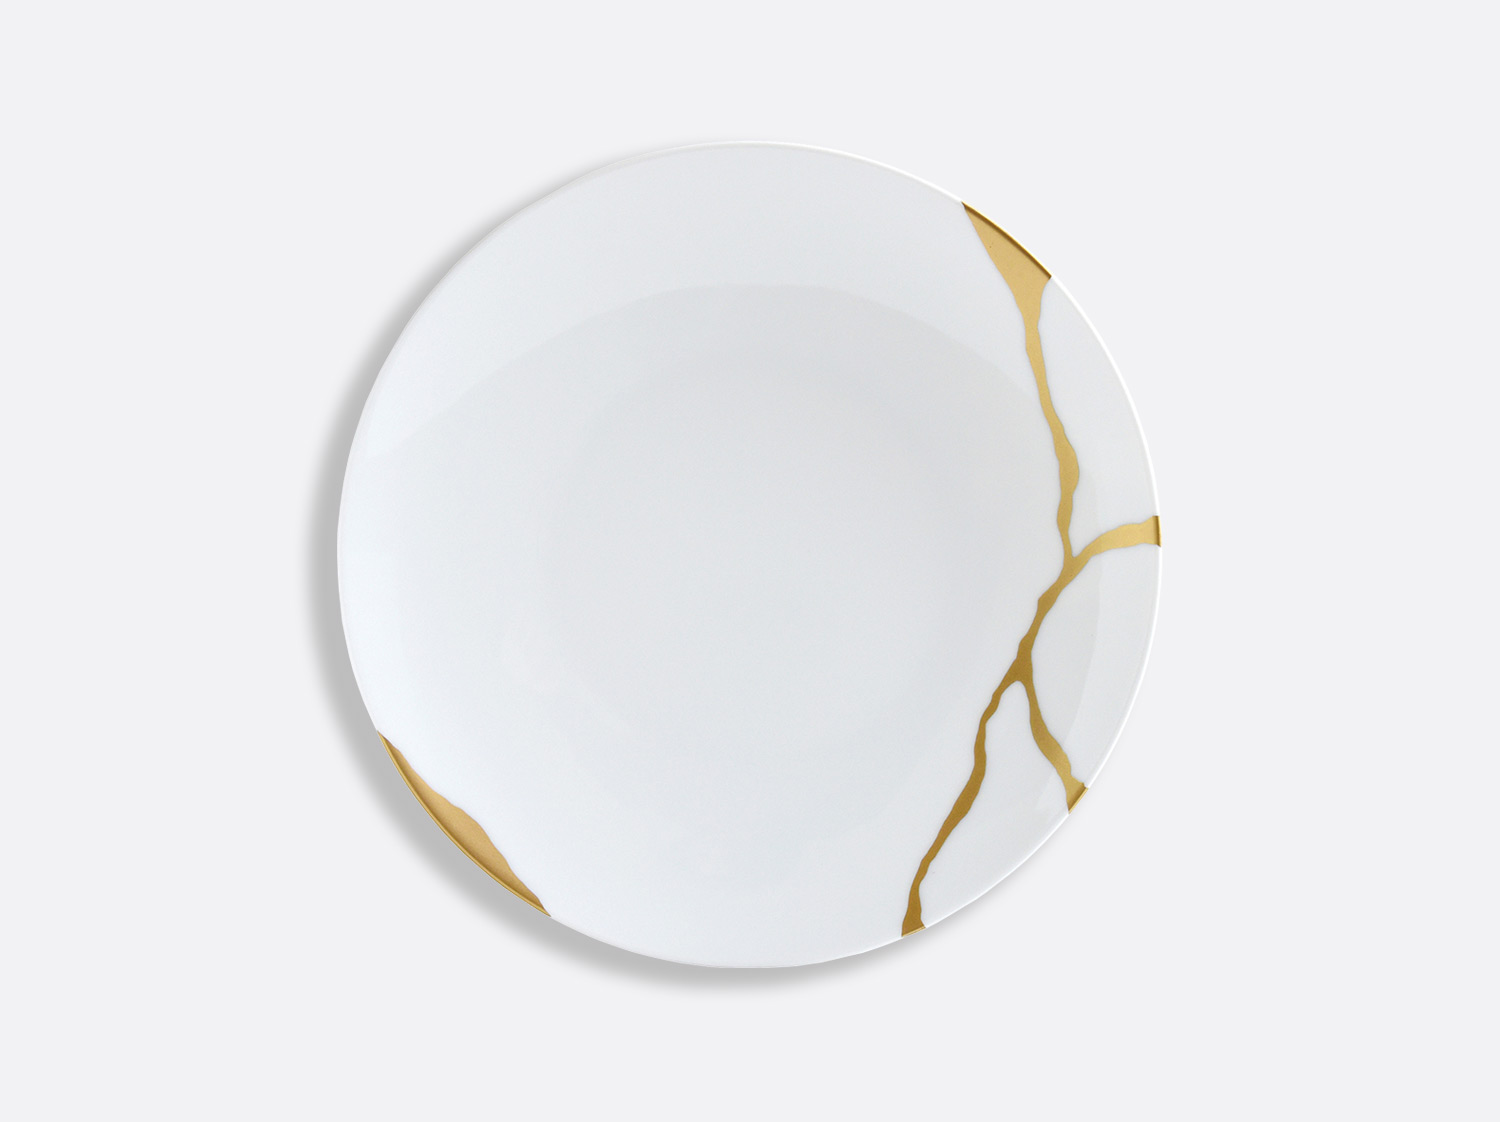 China Coupe salad plate 8.5'' of the collection Kintsugi | Bernardaud